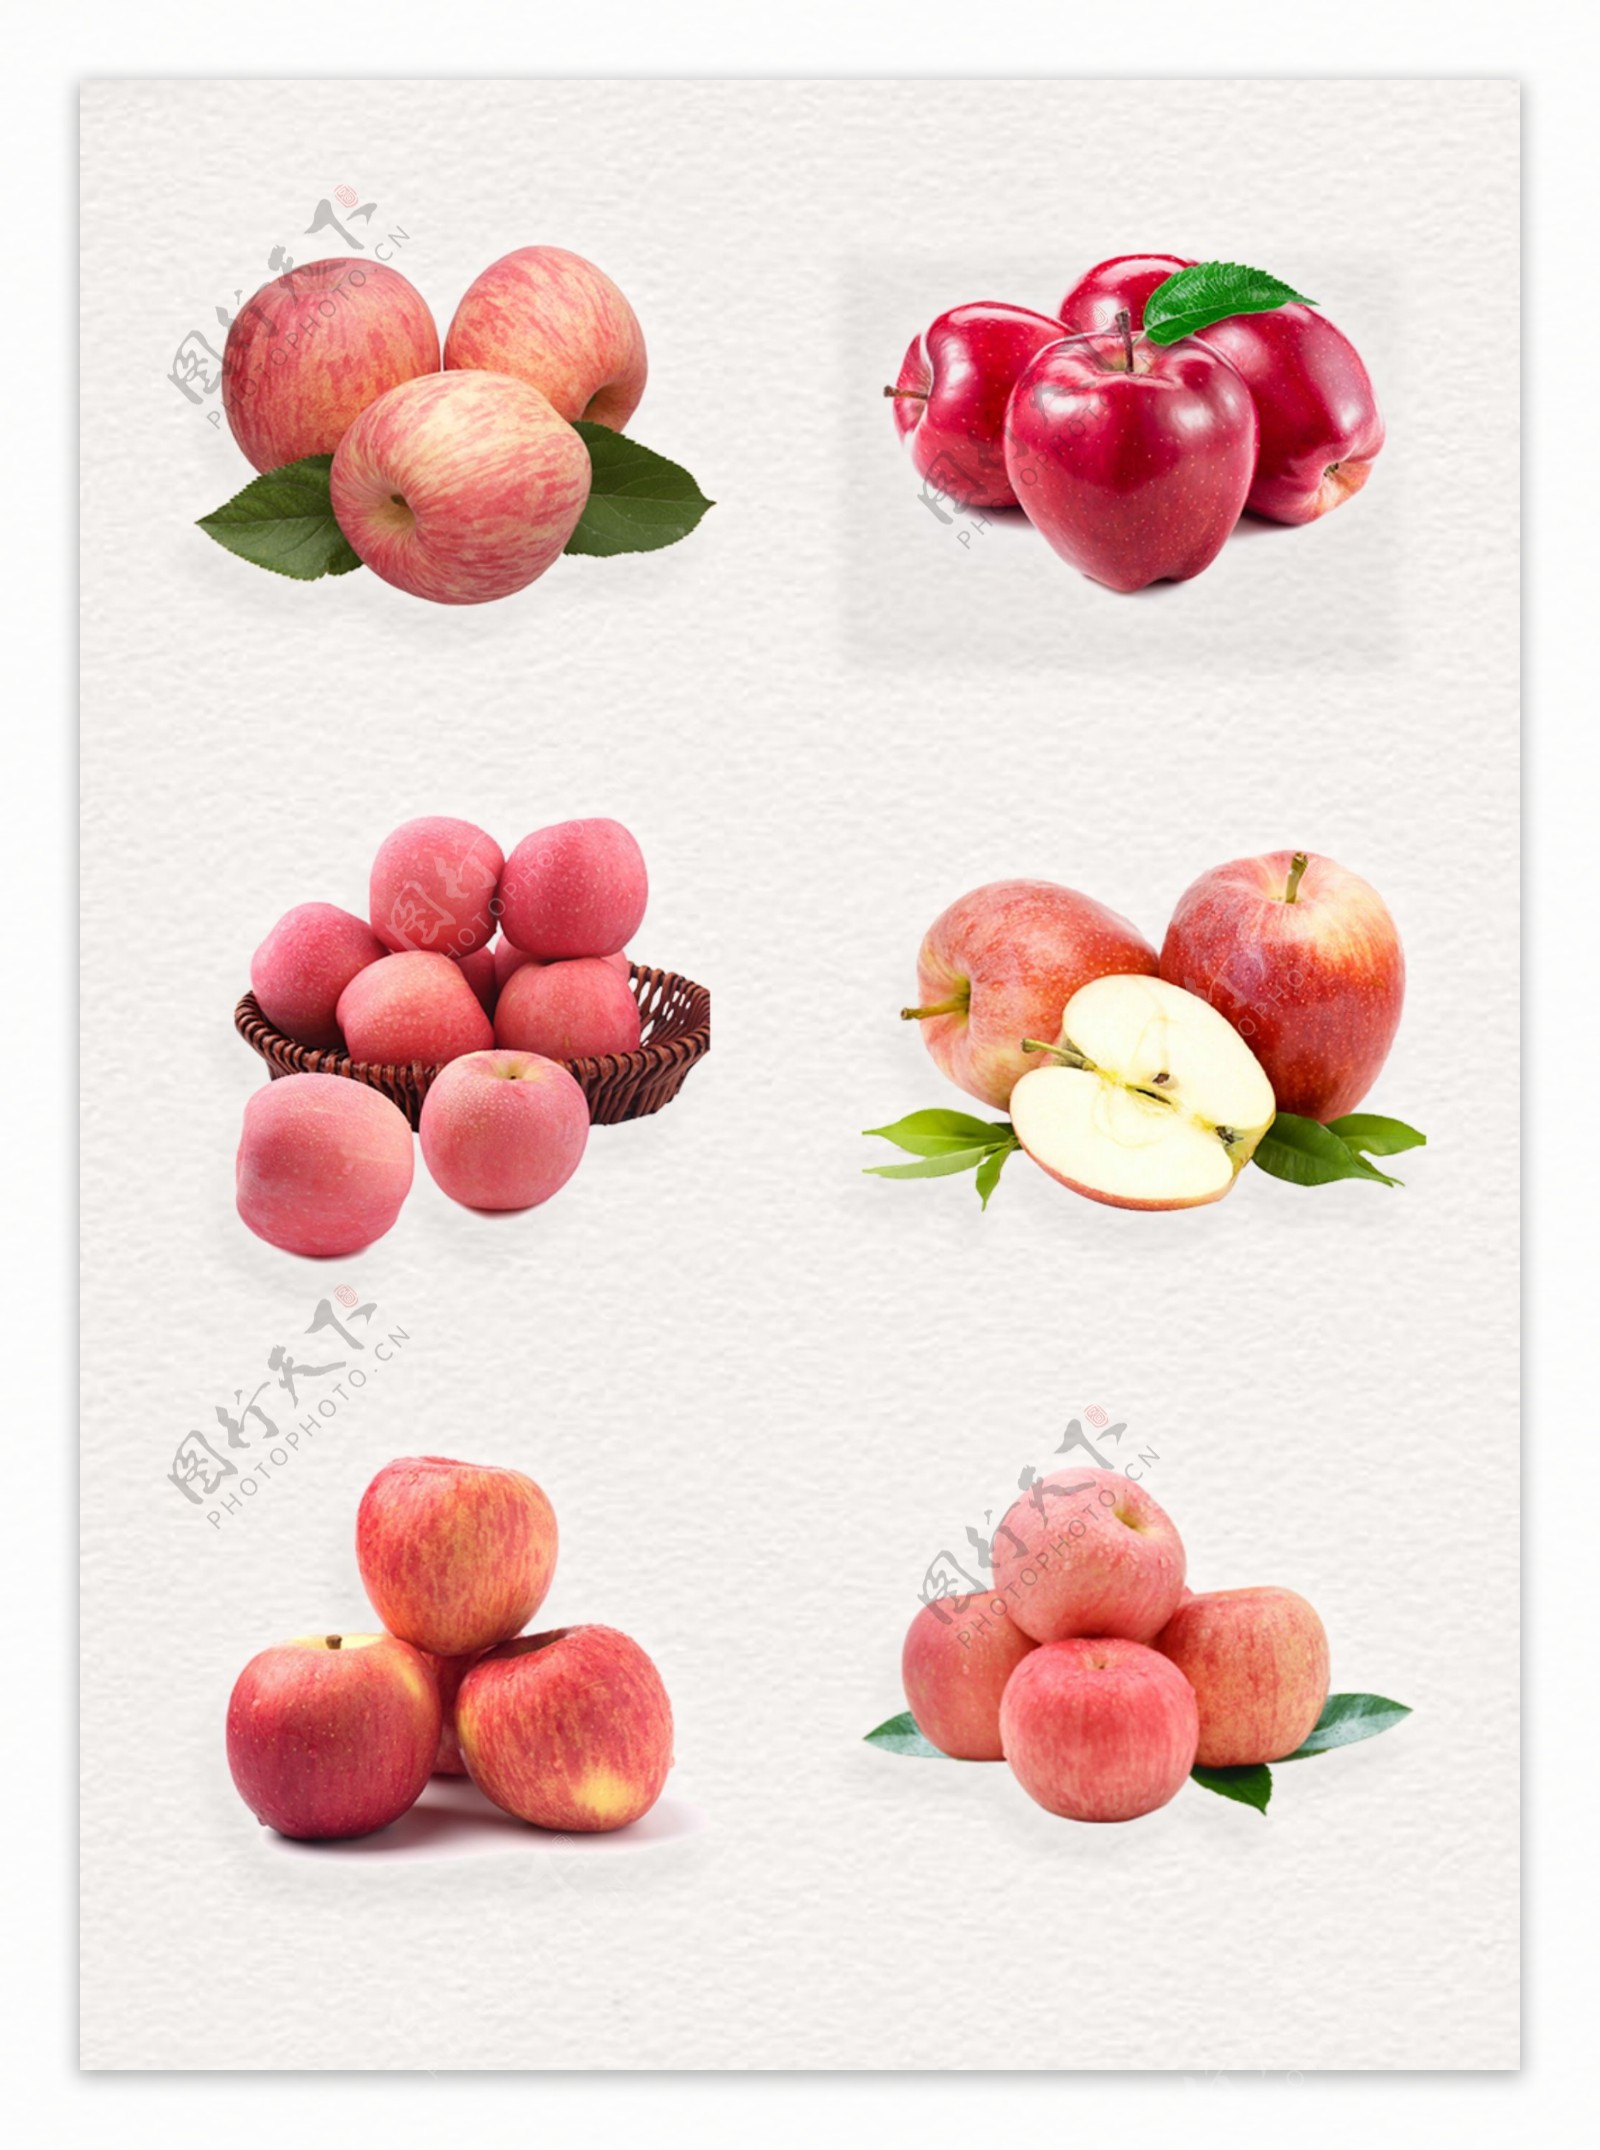 新鲜红富士进口水果产品实物设计